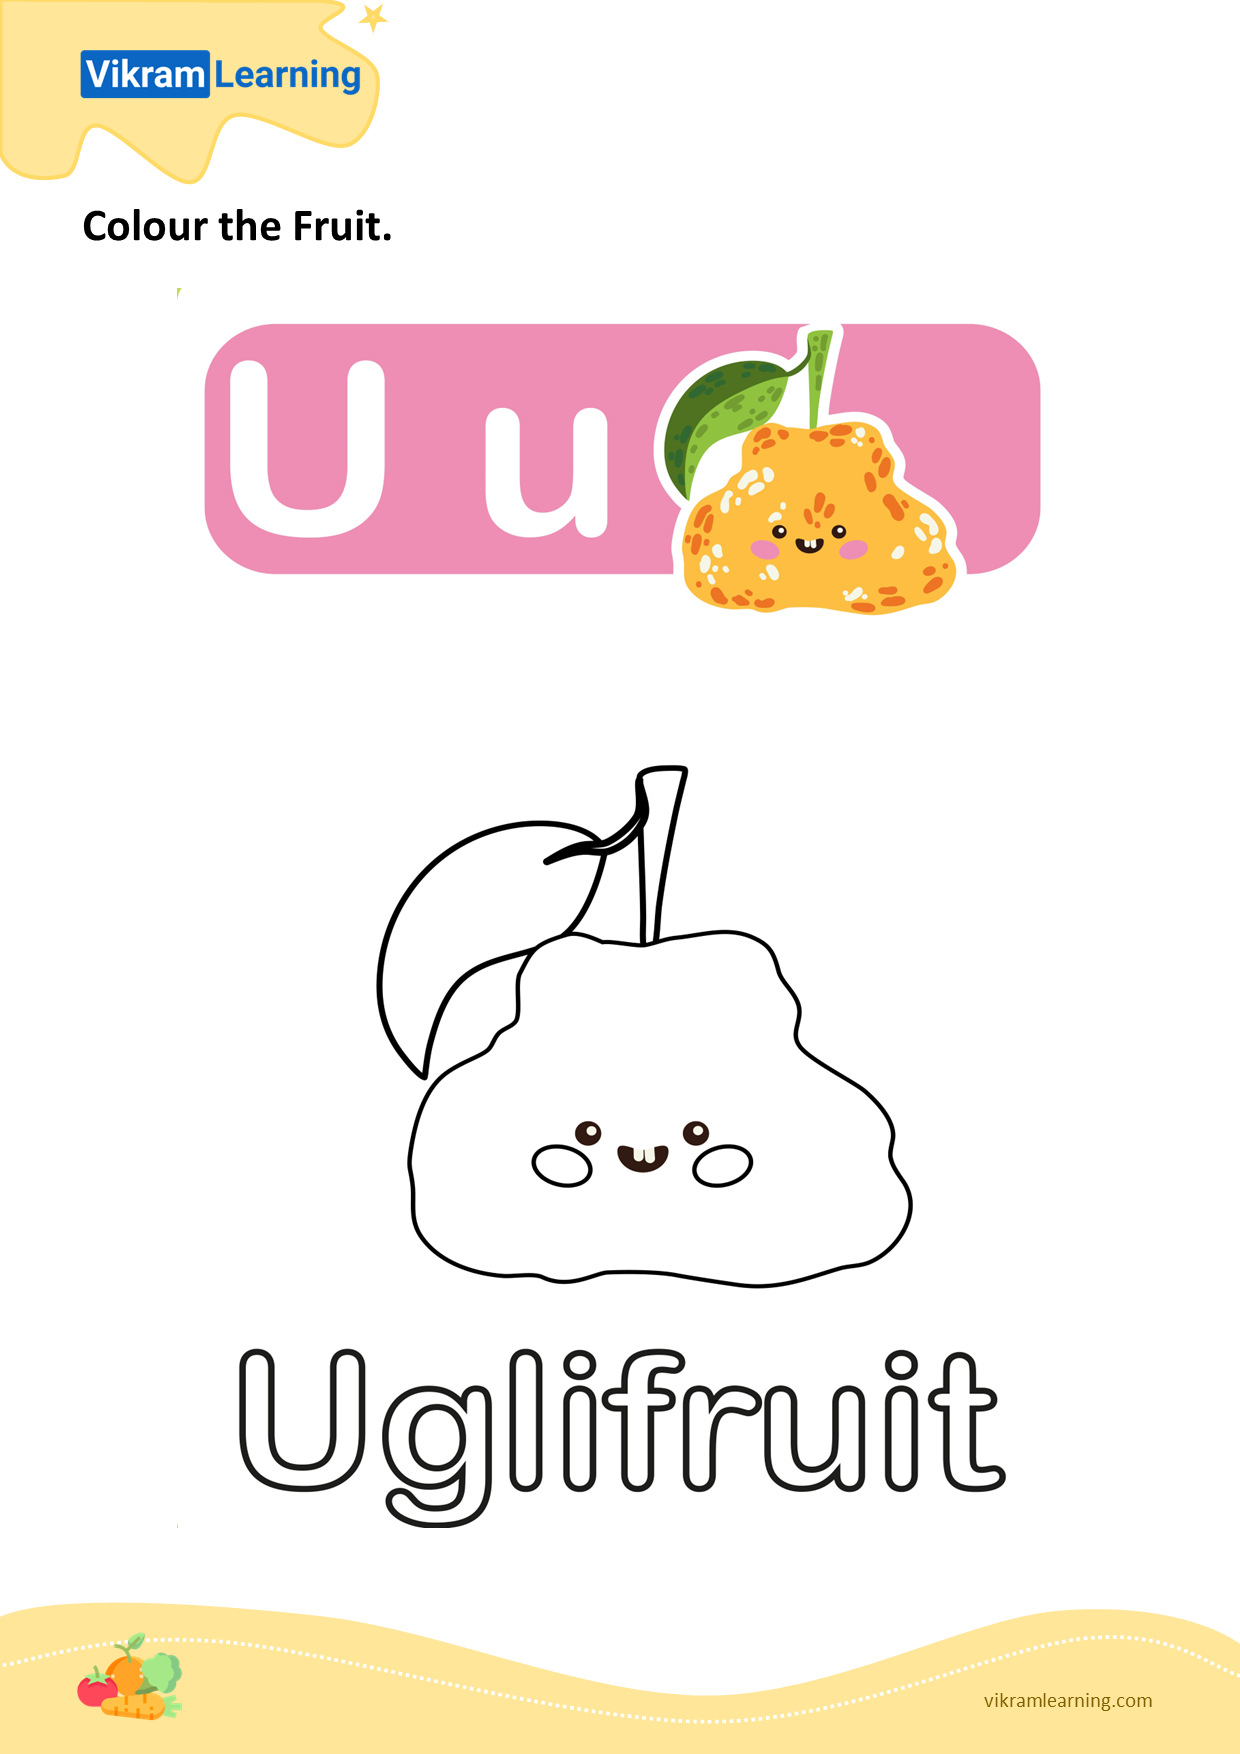 Download colour the fruit - uglifruit worksheets